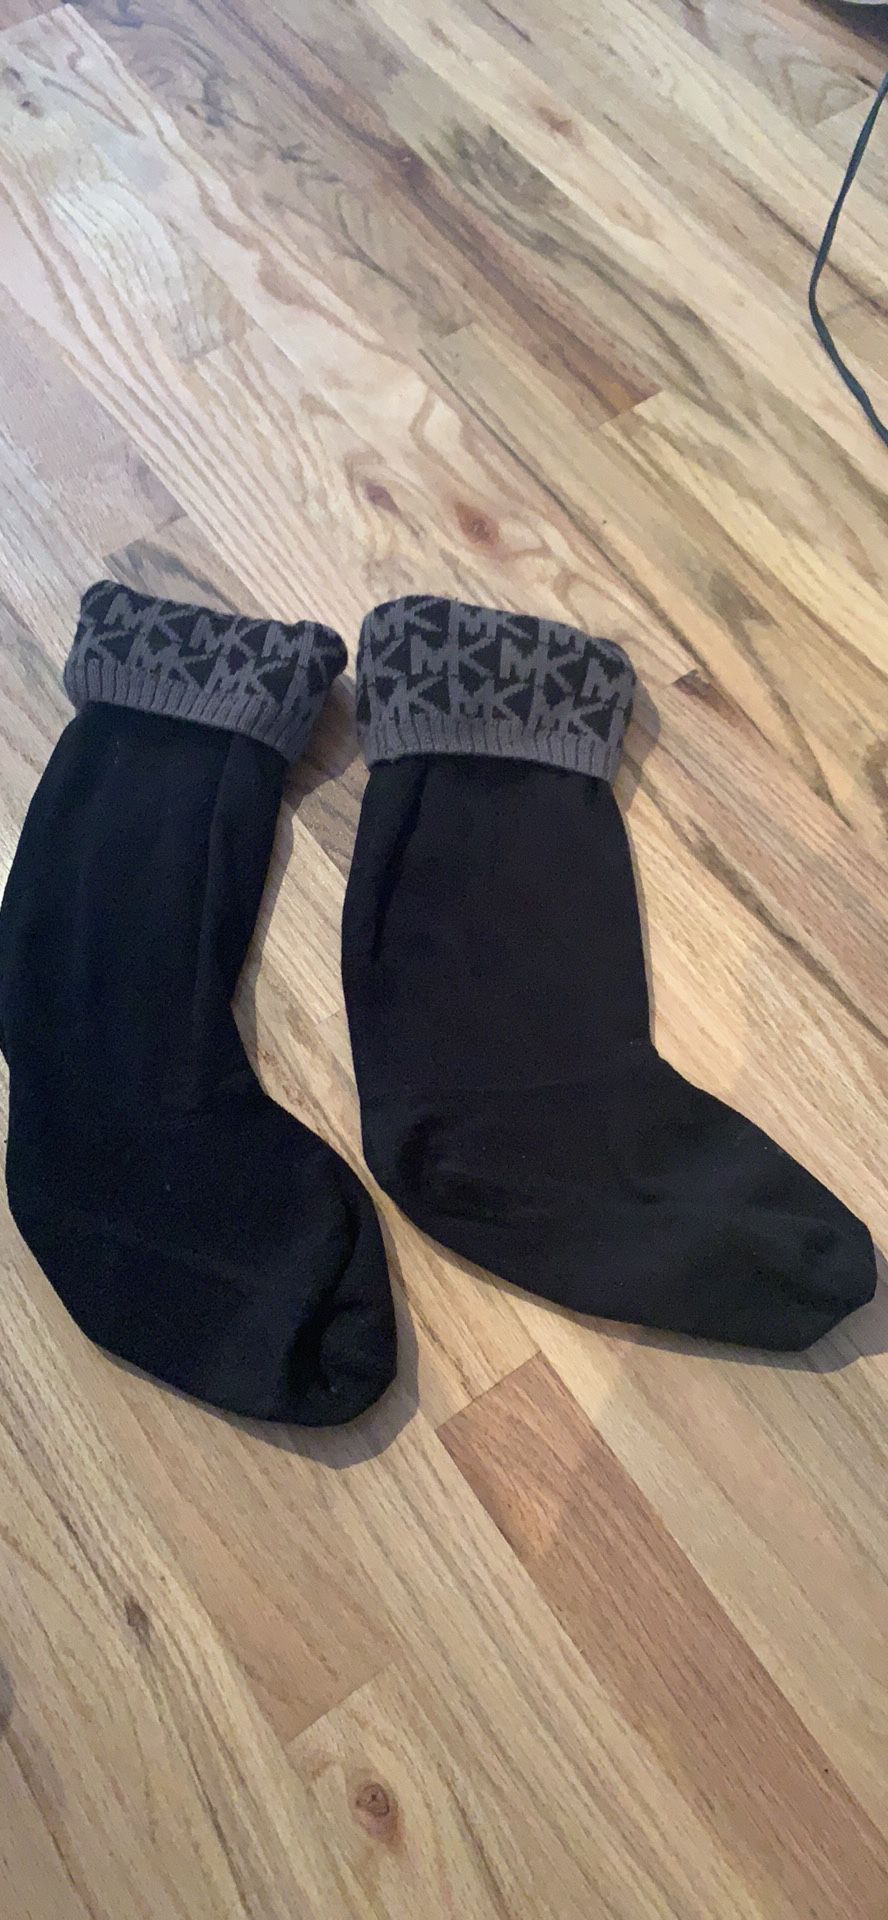 Michael kors boot socks